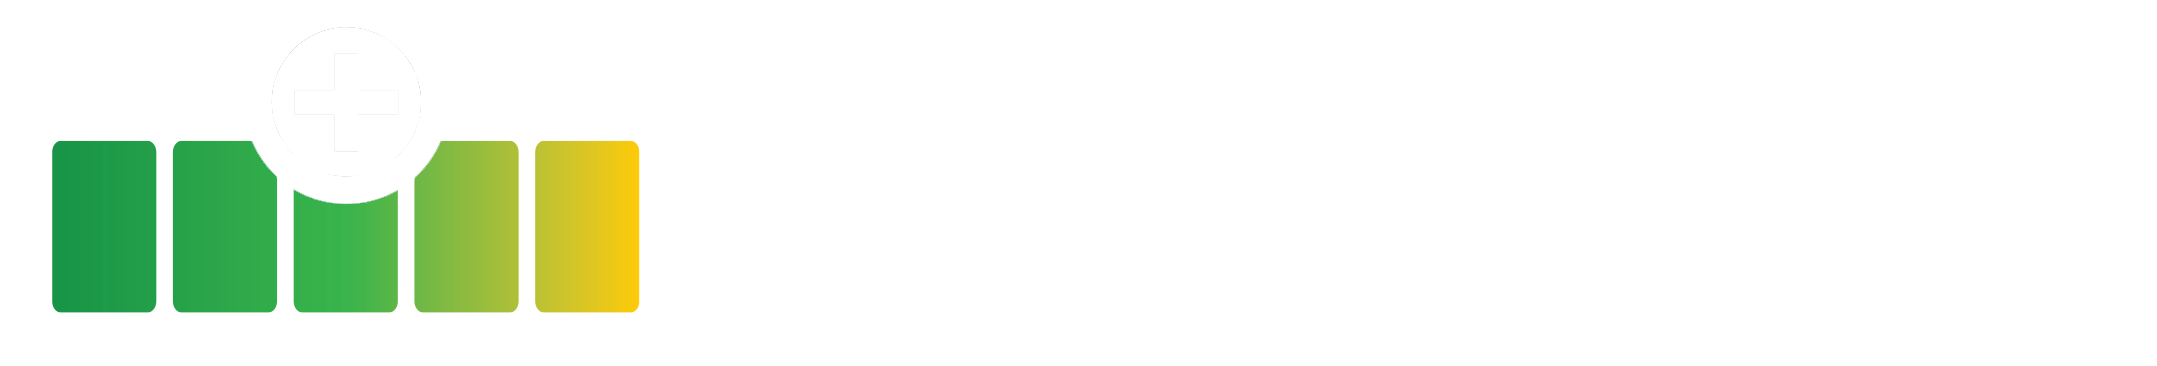 Hybrid Power Units